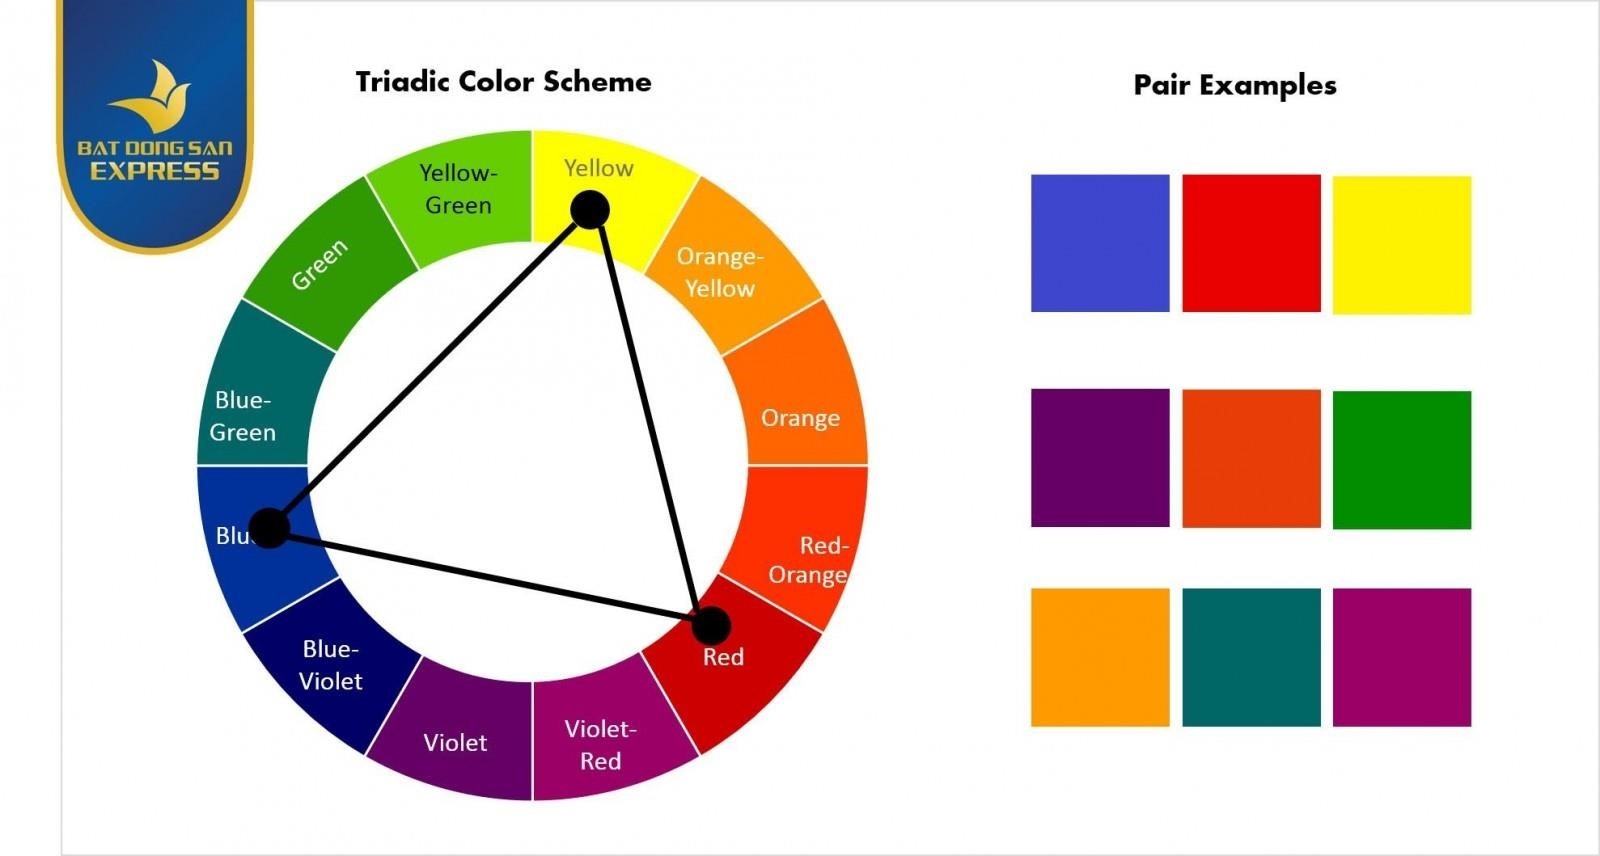 Lý thuyết pha màu là một lý thuyết khoa học giải thích sự kết hợp của các màu sắc để tạo thành màu mới. Theo lý thuyết này, màu sắc được tạo ra bằng cách kết hợp ánh sáng của các màu cơ bản: màu đỏ, xanh lam và xanh lá cây. Khi ánh sáng các màu này kết hợp lại với nhau, chúng tạo ra màu sắc khác nhau, từ màu trắng cho đến màu đen. Lý thuyết pha màu được áp dụng rộng rãi trong các lĩnh vực như n